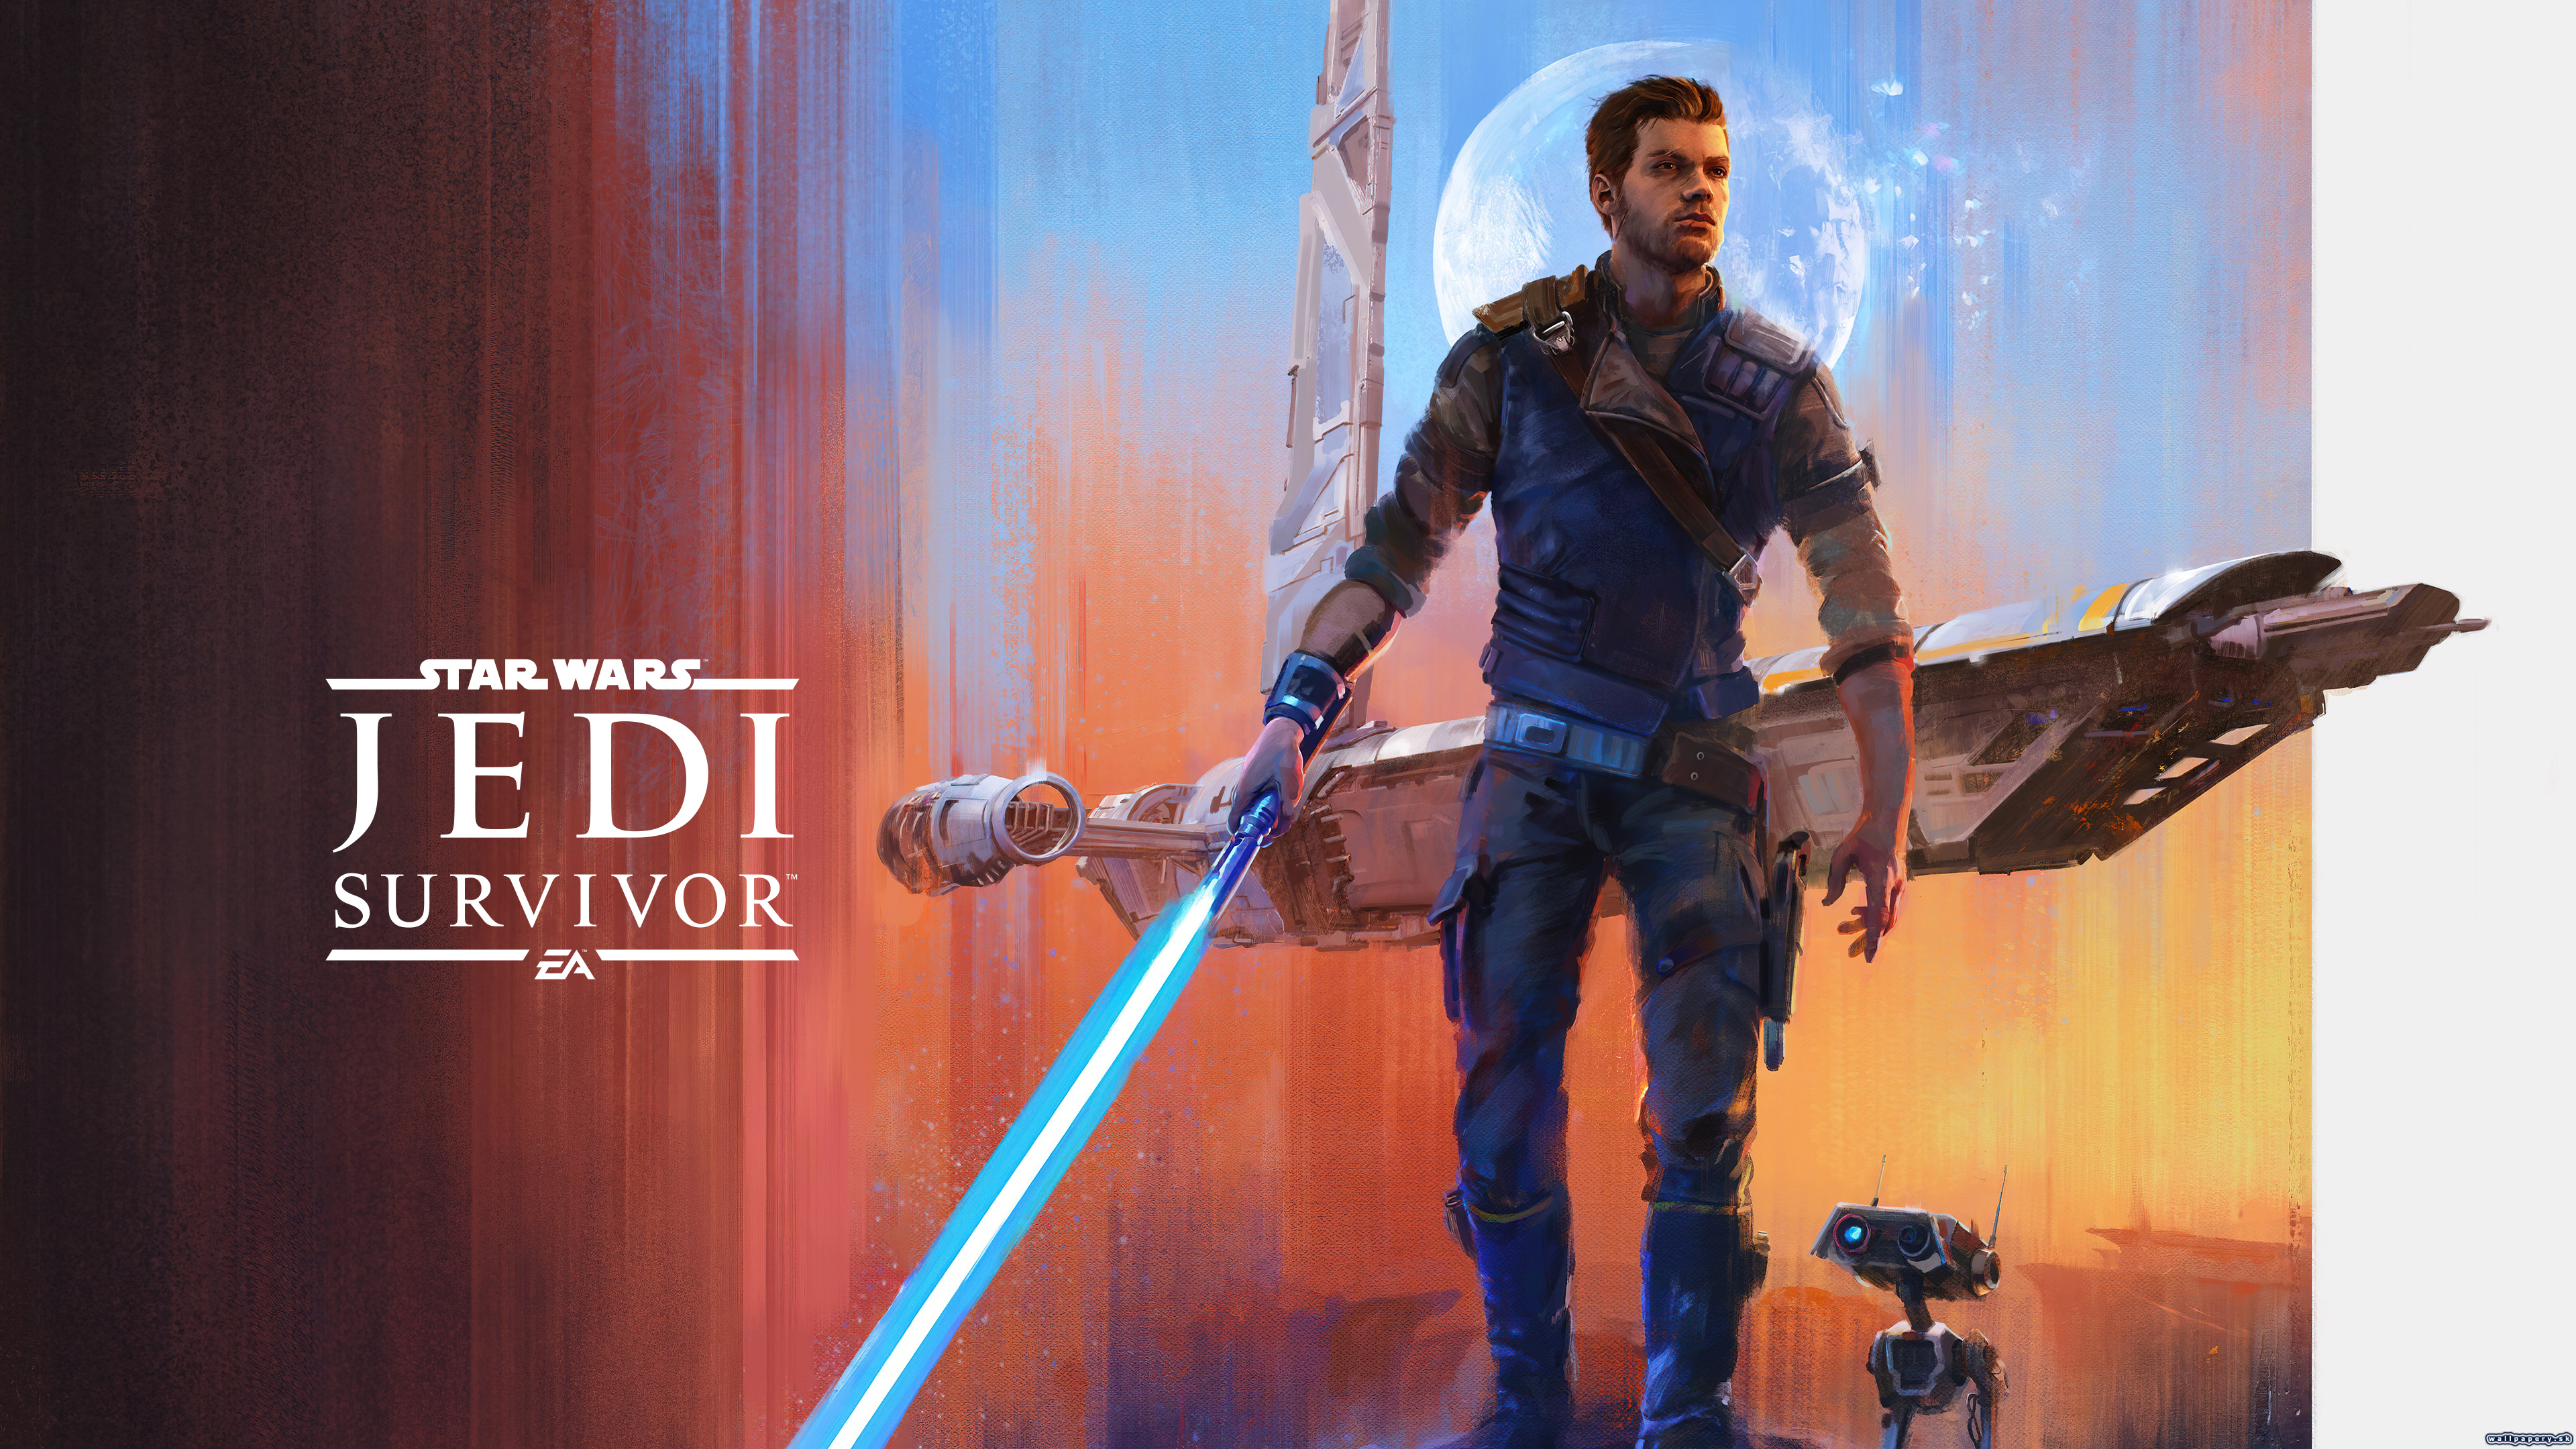 Star Wars Jedi: Survivor - wallpaper 2